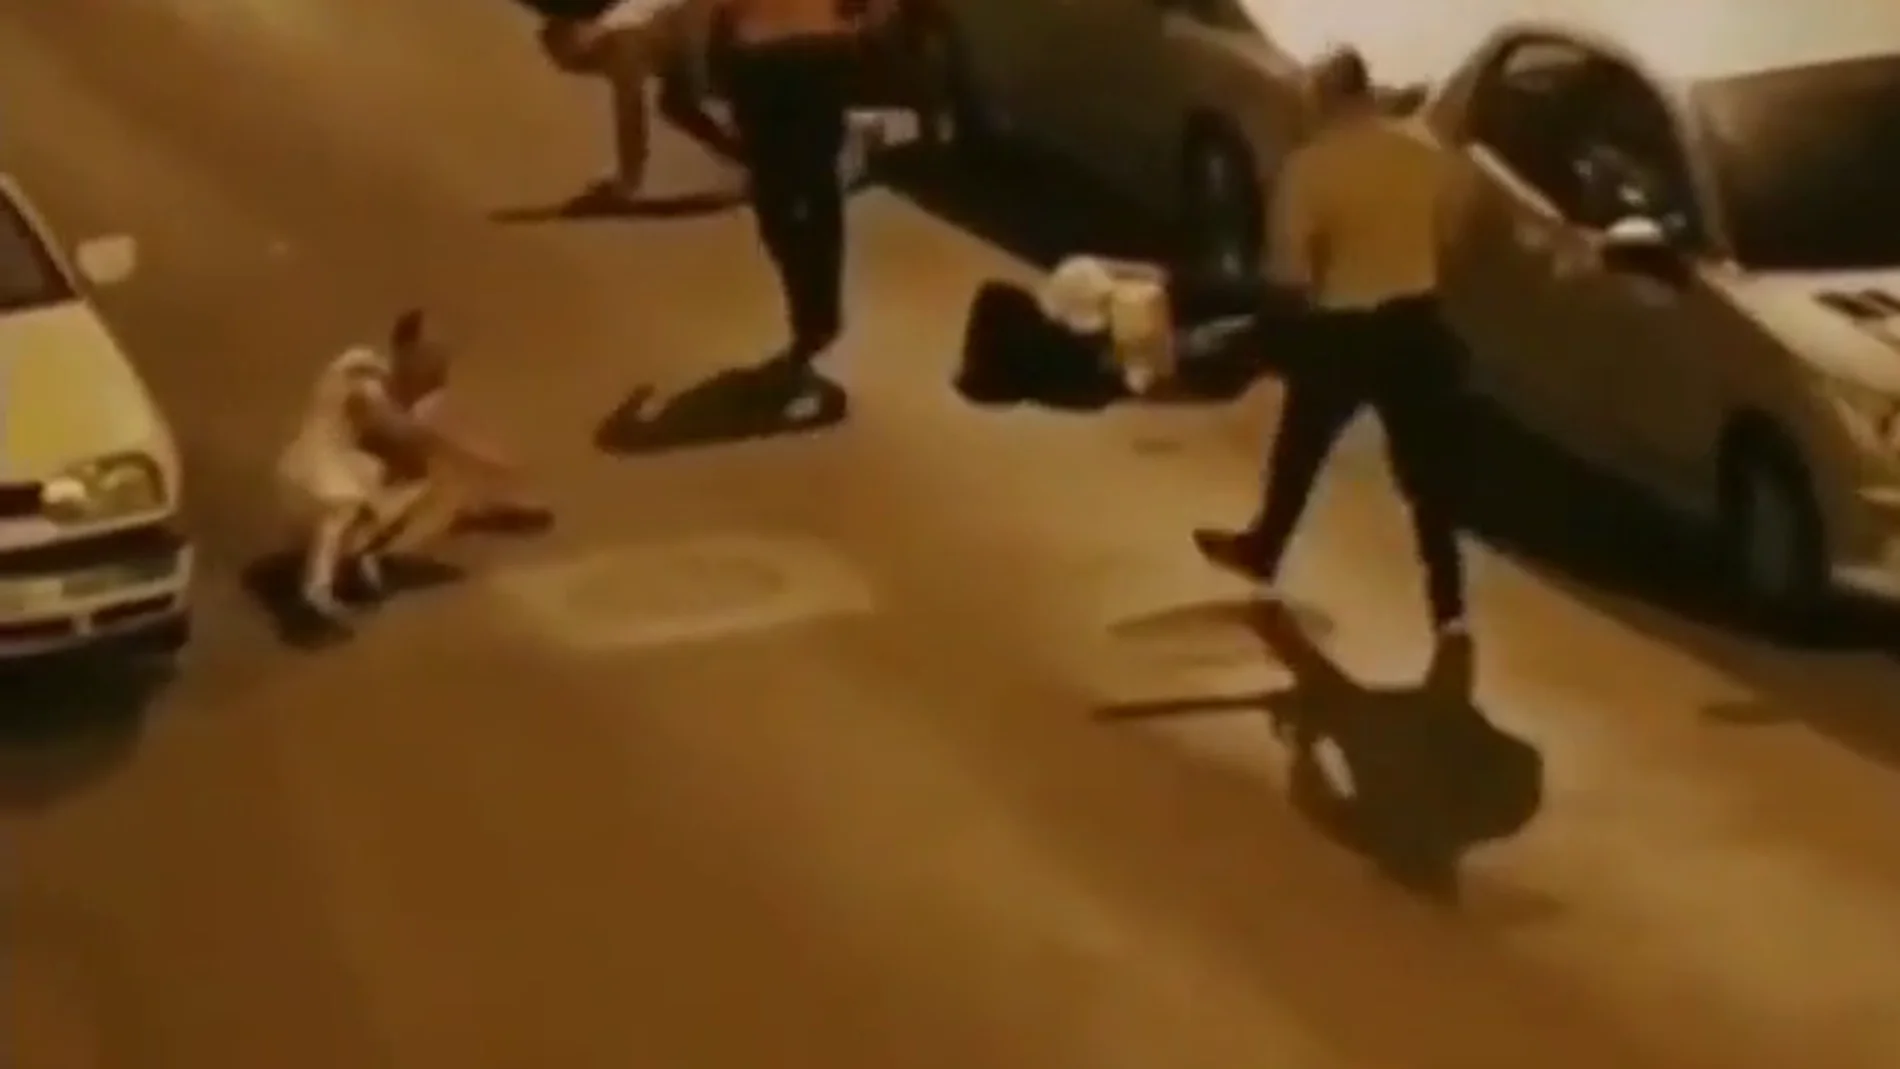 Escuela de posgrado Interesar ir de compras El vídeo de un hombre sembrando el pánico en Lugo con una motosierra  durante una pelea: "